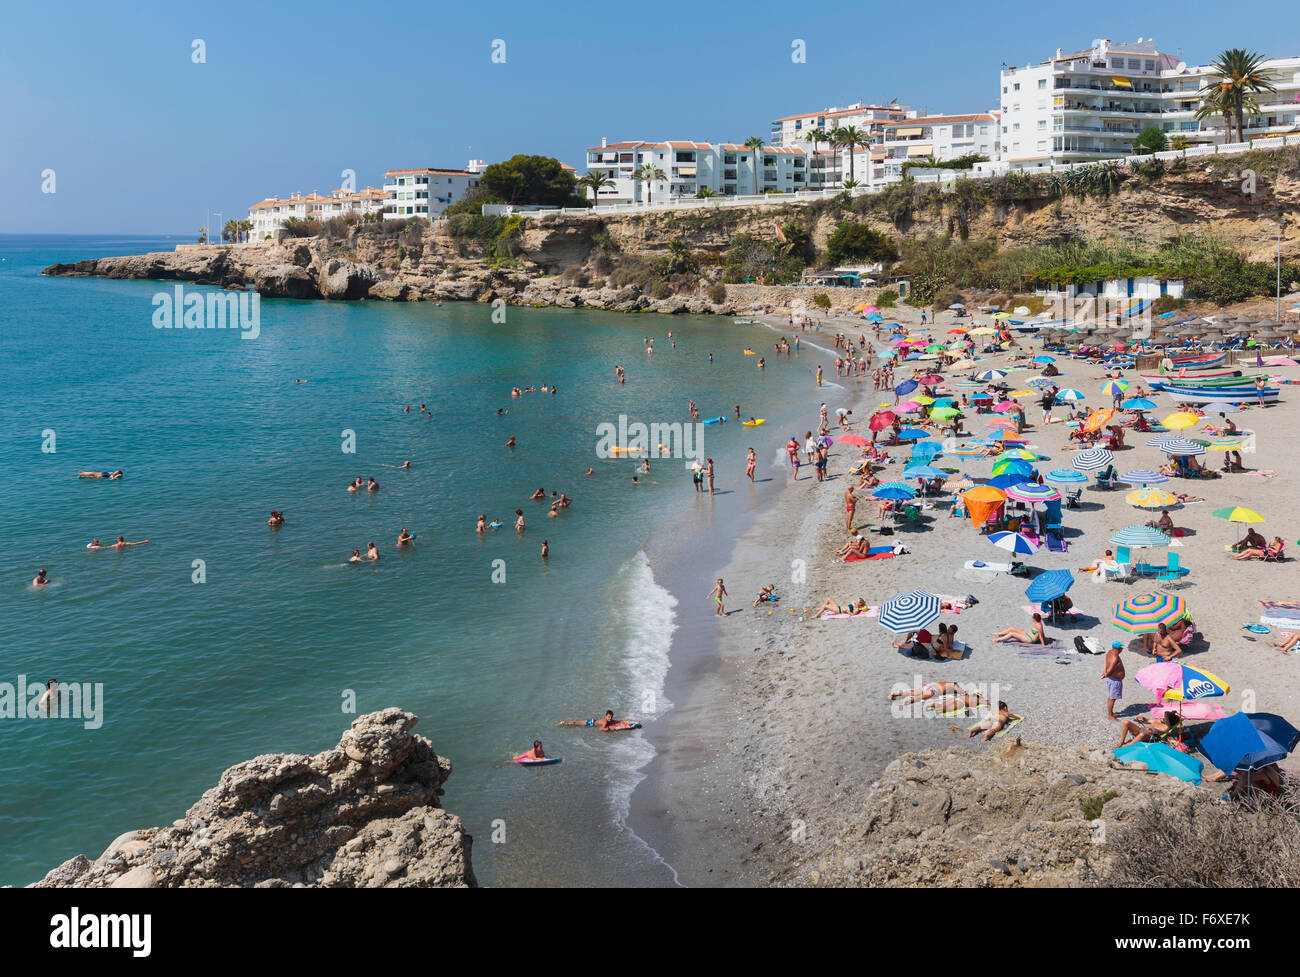 El Salon beach, Costa del Sol; Nerja, Malaga Province, Andalusia, Spain Stock Photo